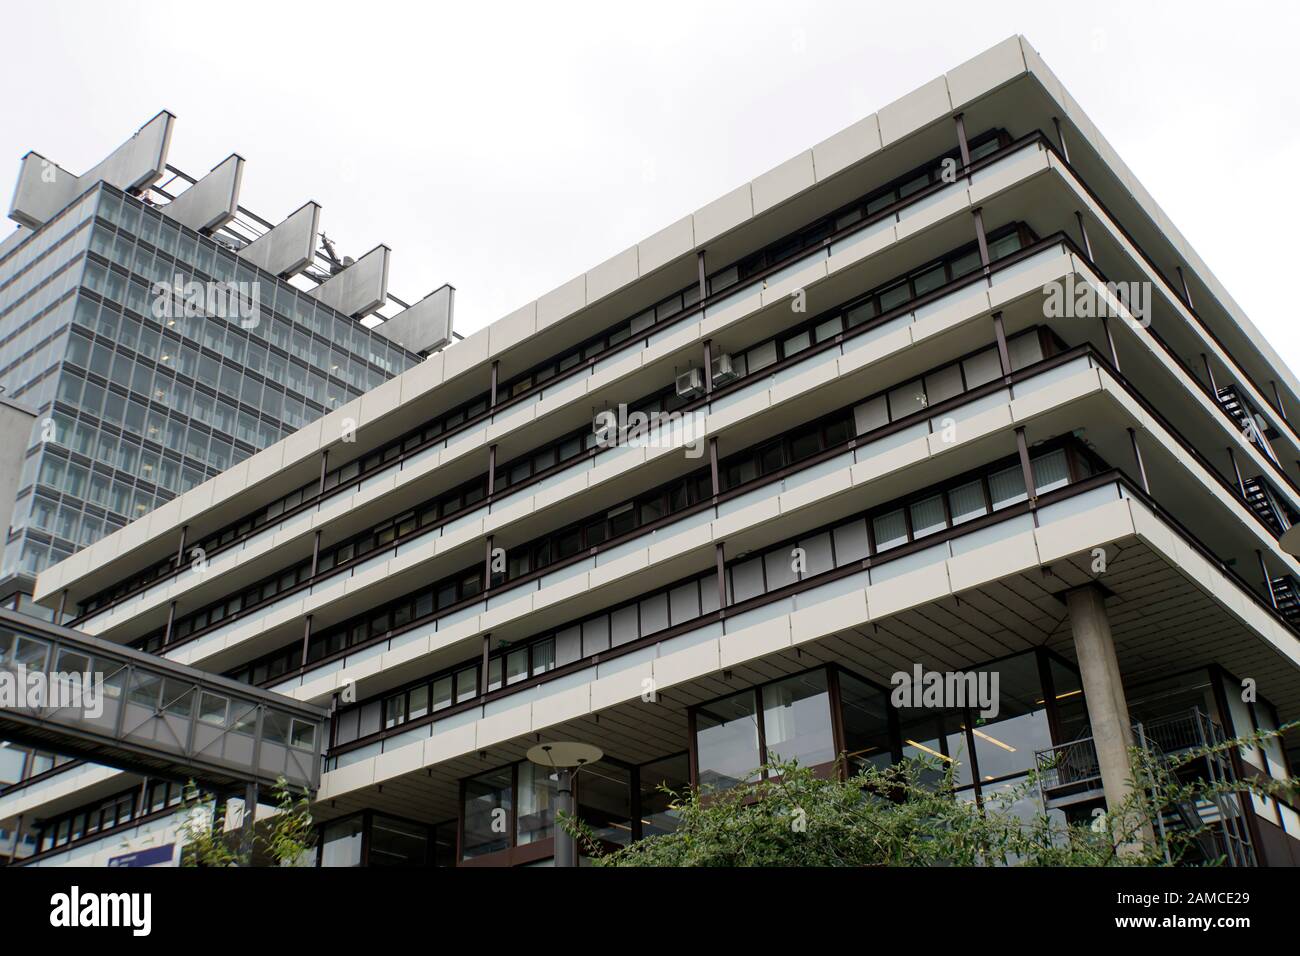 Gebäude des Max-Planck-Institut für Biologie des Alrs auf dem Campus der Universitätsklinik Köln, Nordrhein-Westfalen, Allemagne Banque D'Images